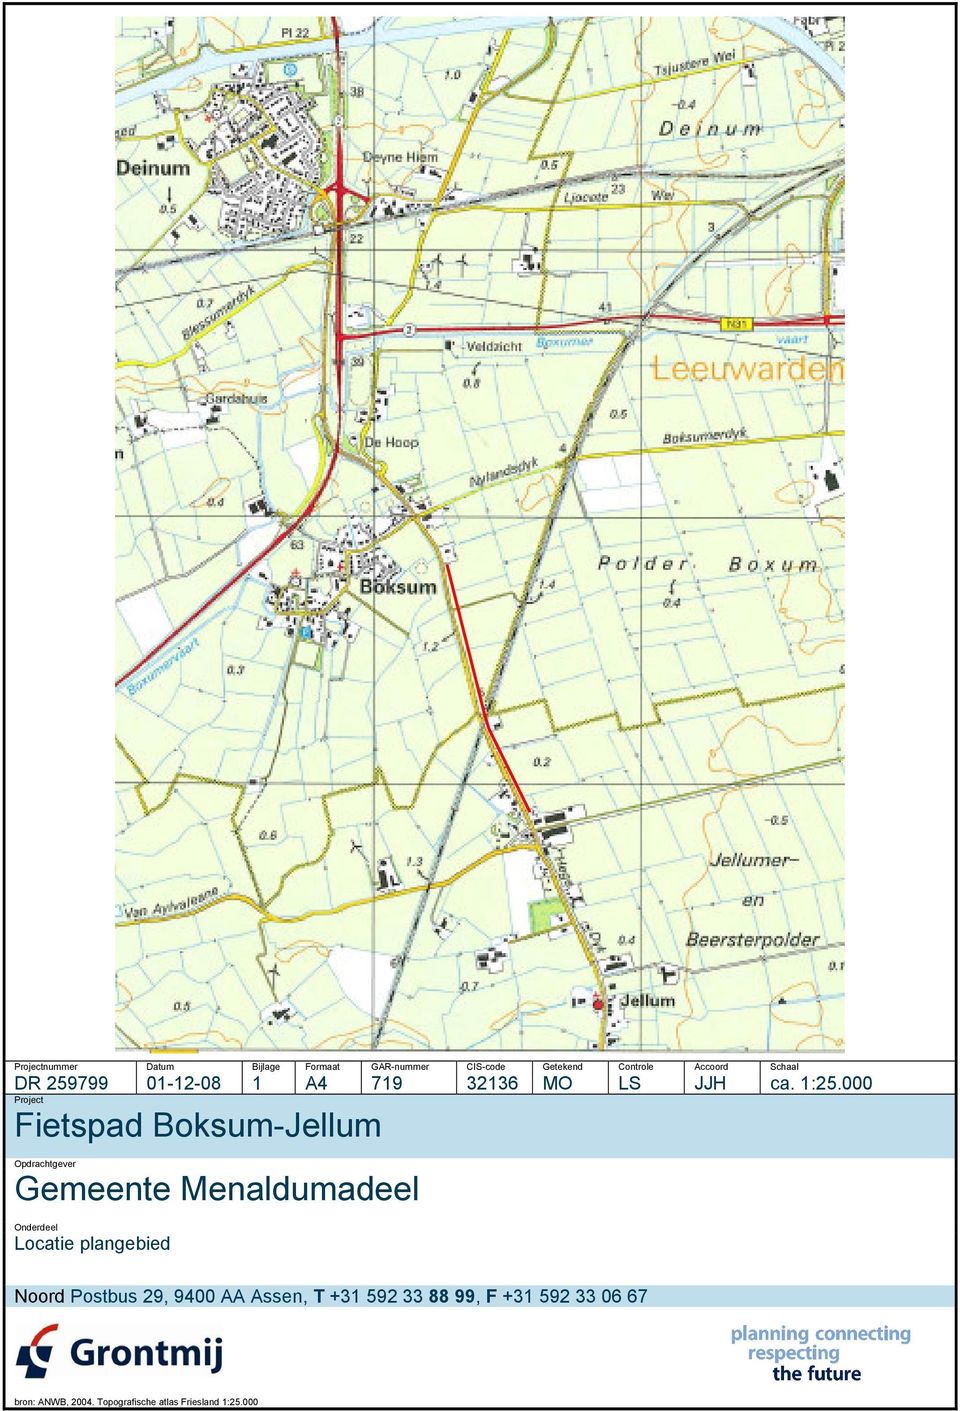 Project Fietspad Boksum-Jellum Opdrachtgever Gemeente Menaldumadeel Onderdeel Locatie